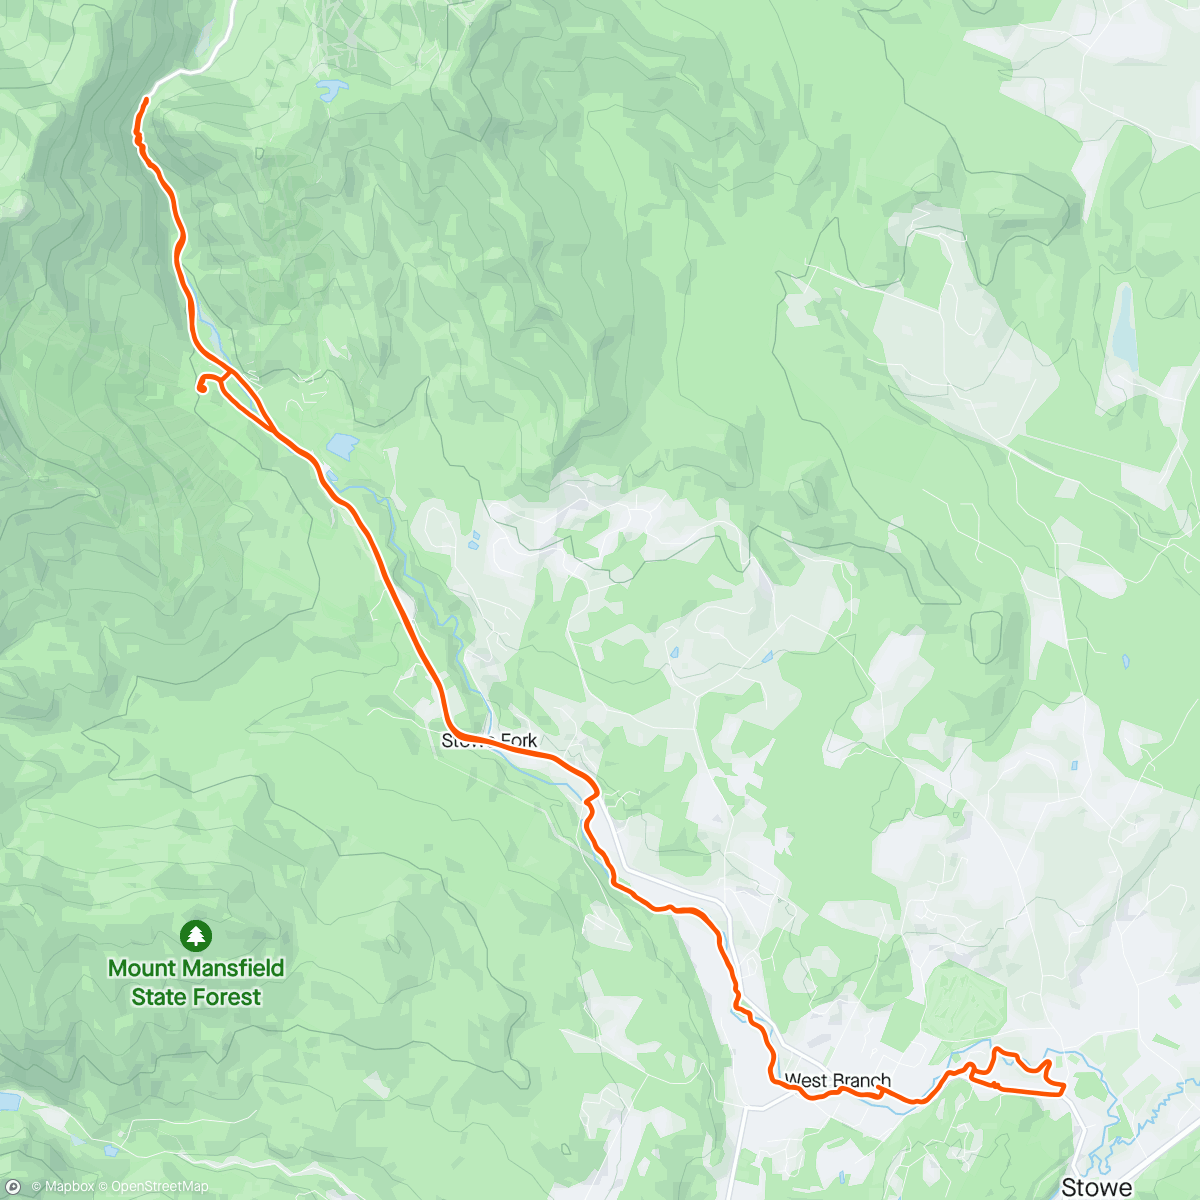 アクティビティ「Roamed the bike path up to Stowe and smugglers notch road」の地図